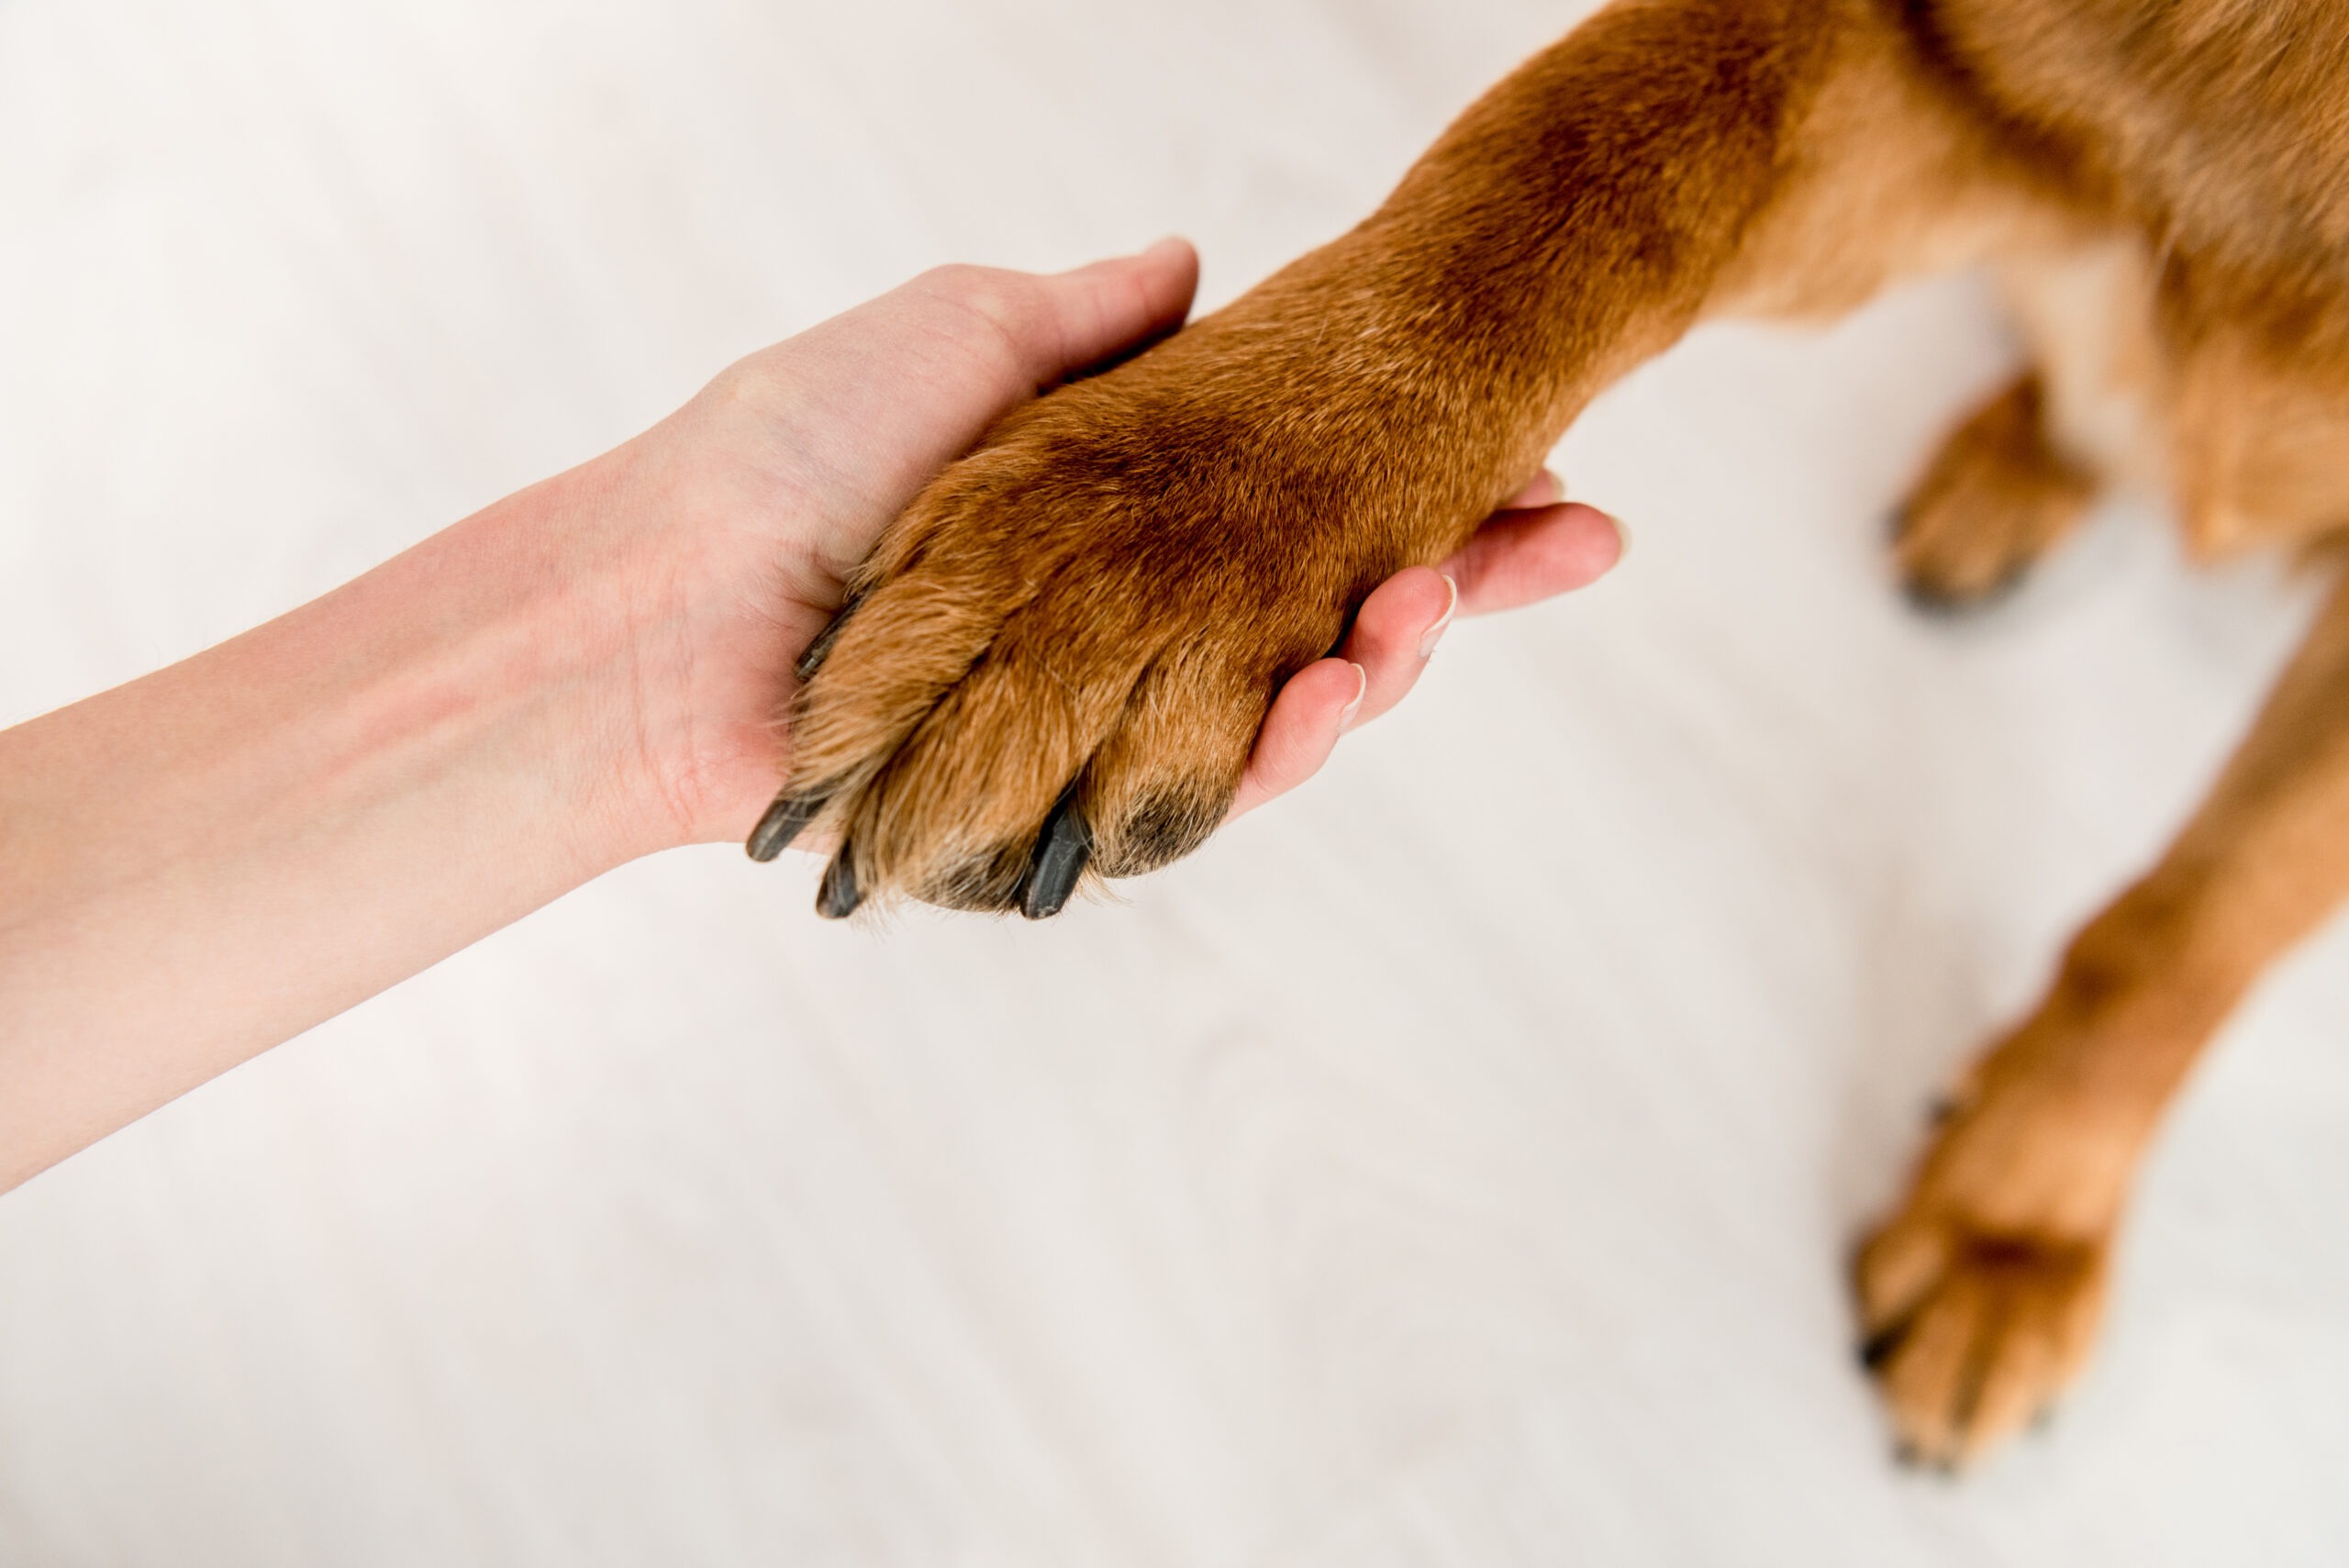 Pfotenpflege,Pfotenpflege beim Hund,5 Tipps zur richtigen Pflege,Hundeversicherung,Tierversicherung, Pfotenpflege beim Hund: 5 Tipps zur richtigen Pflege